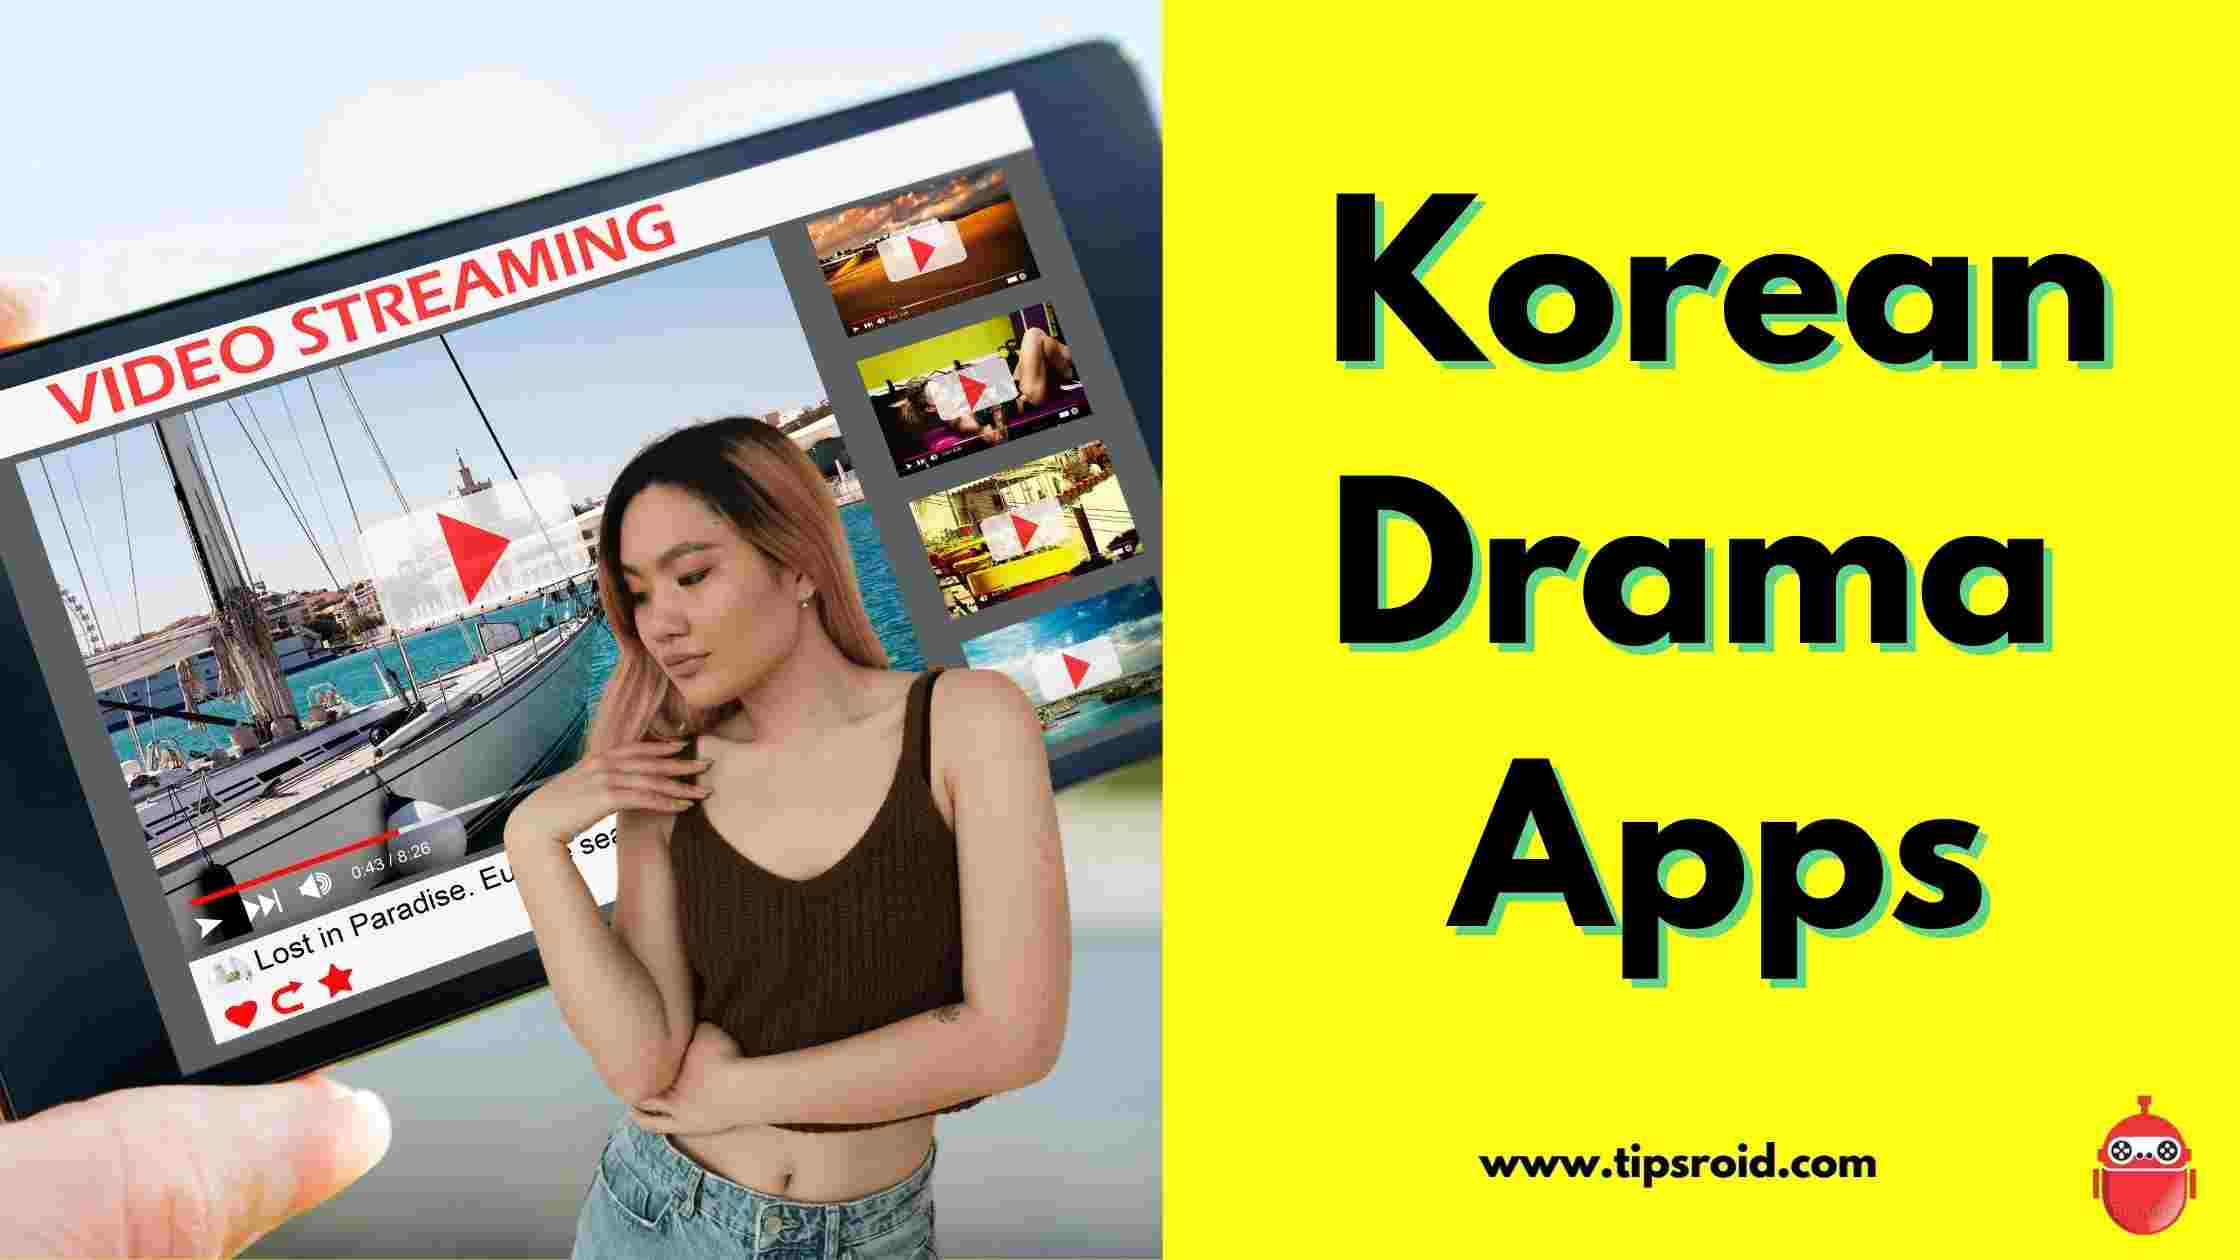 Korean Drama App